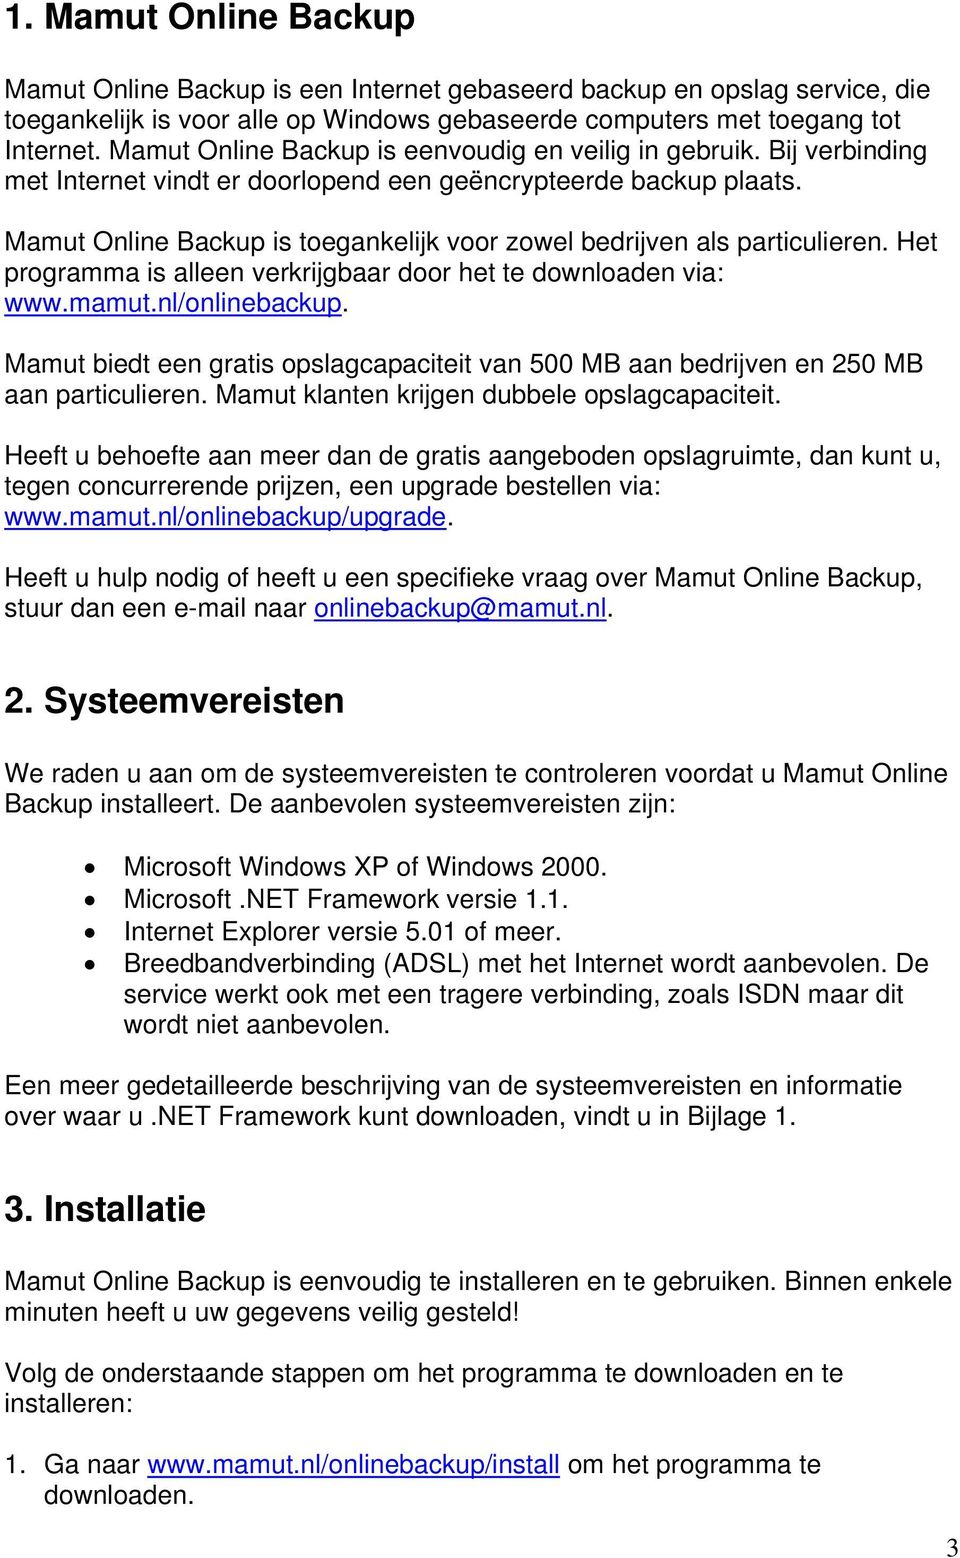 Mamut Online Backup is toegankelijk voor zowel bedrijven als particulieren. Het programma is alleen verkrijgbaar door het te downloaden via: www.mamut.nl/onlinebackup.